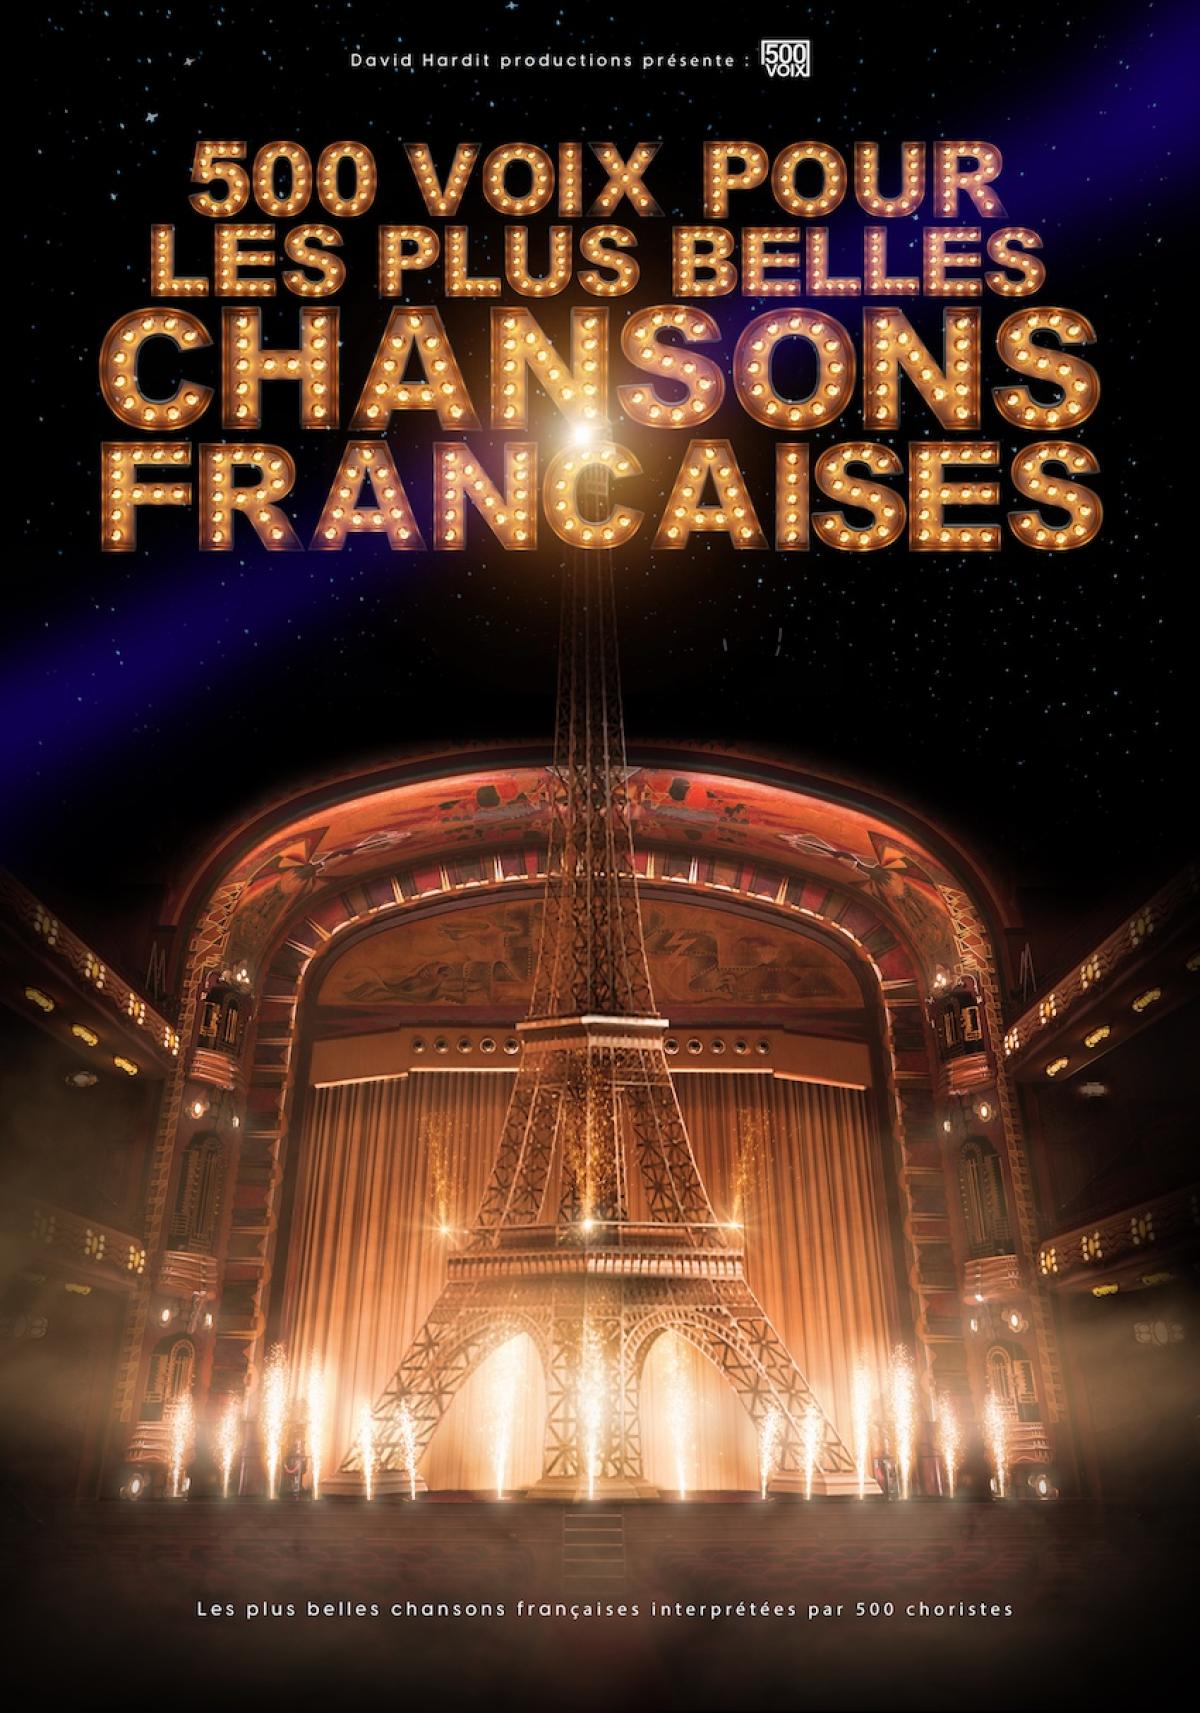 500 Voix Pour Les Plus Belles Chansons al Le Phare Chambery Tickets